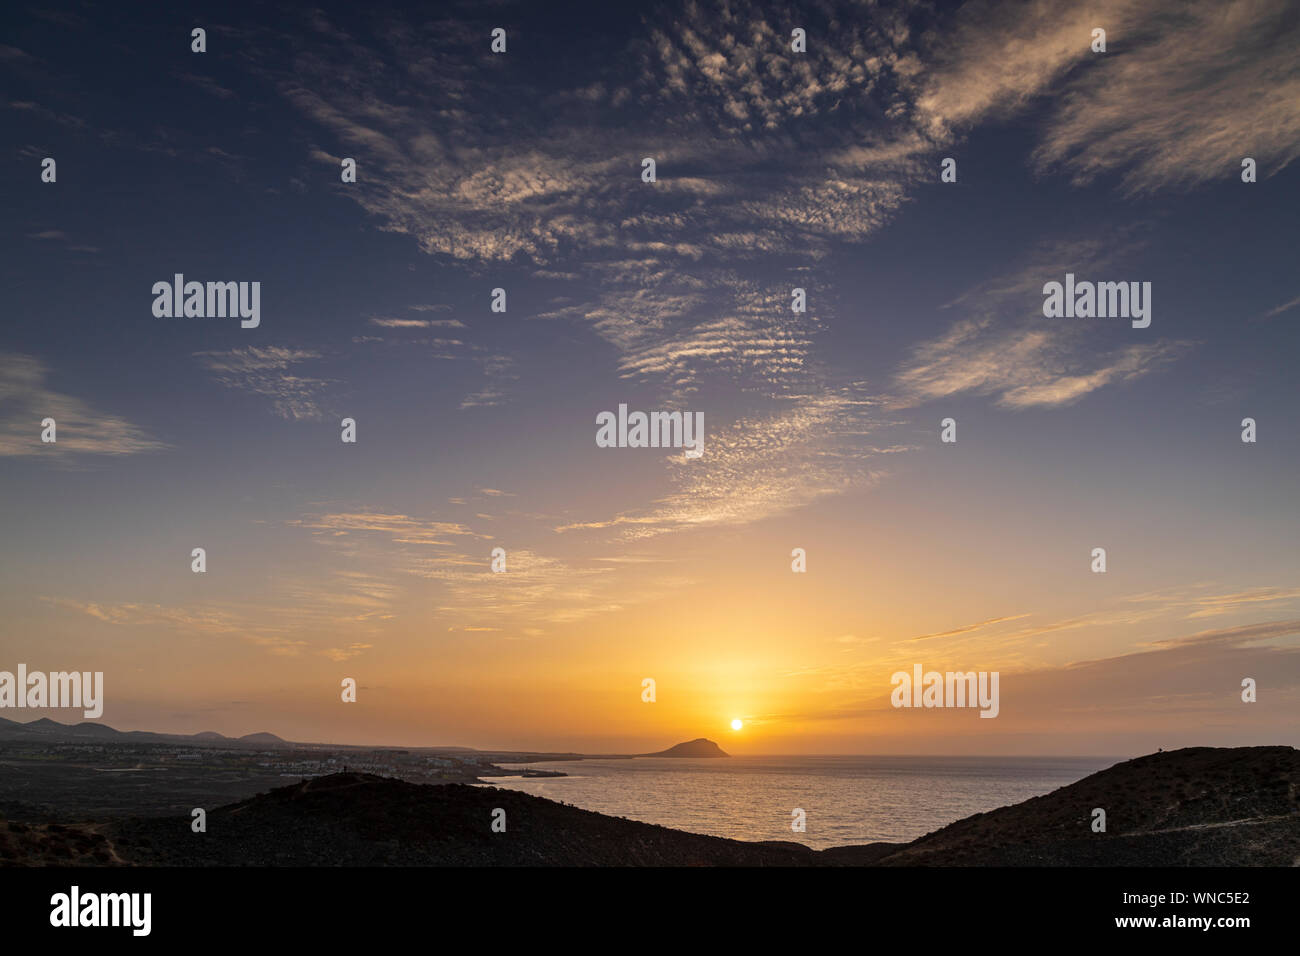 Sunrise over Montana Rojo from Montana Amarilla, Costa Silencio, early morning, Tenerife, Canary Islands, Spain Stock Photo